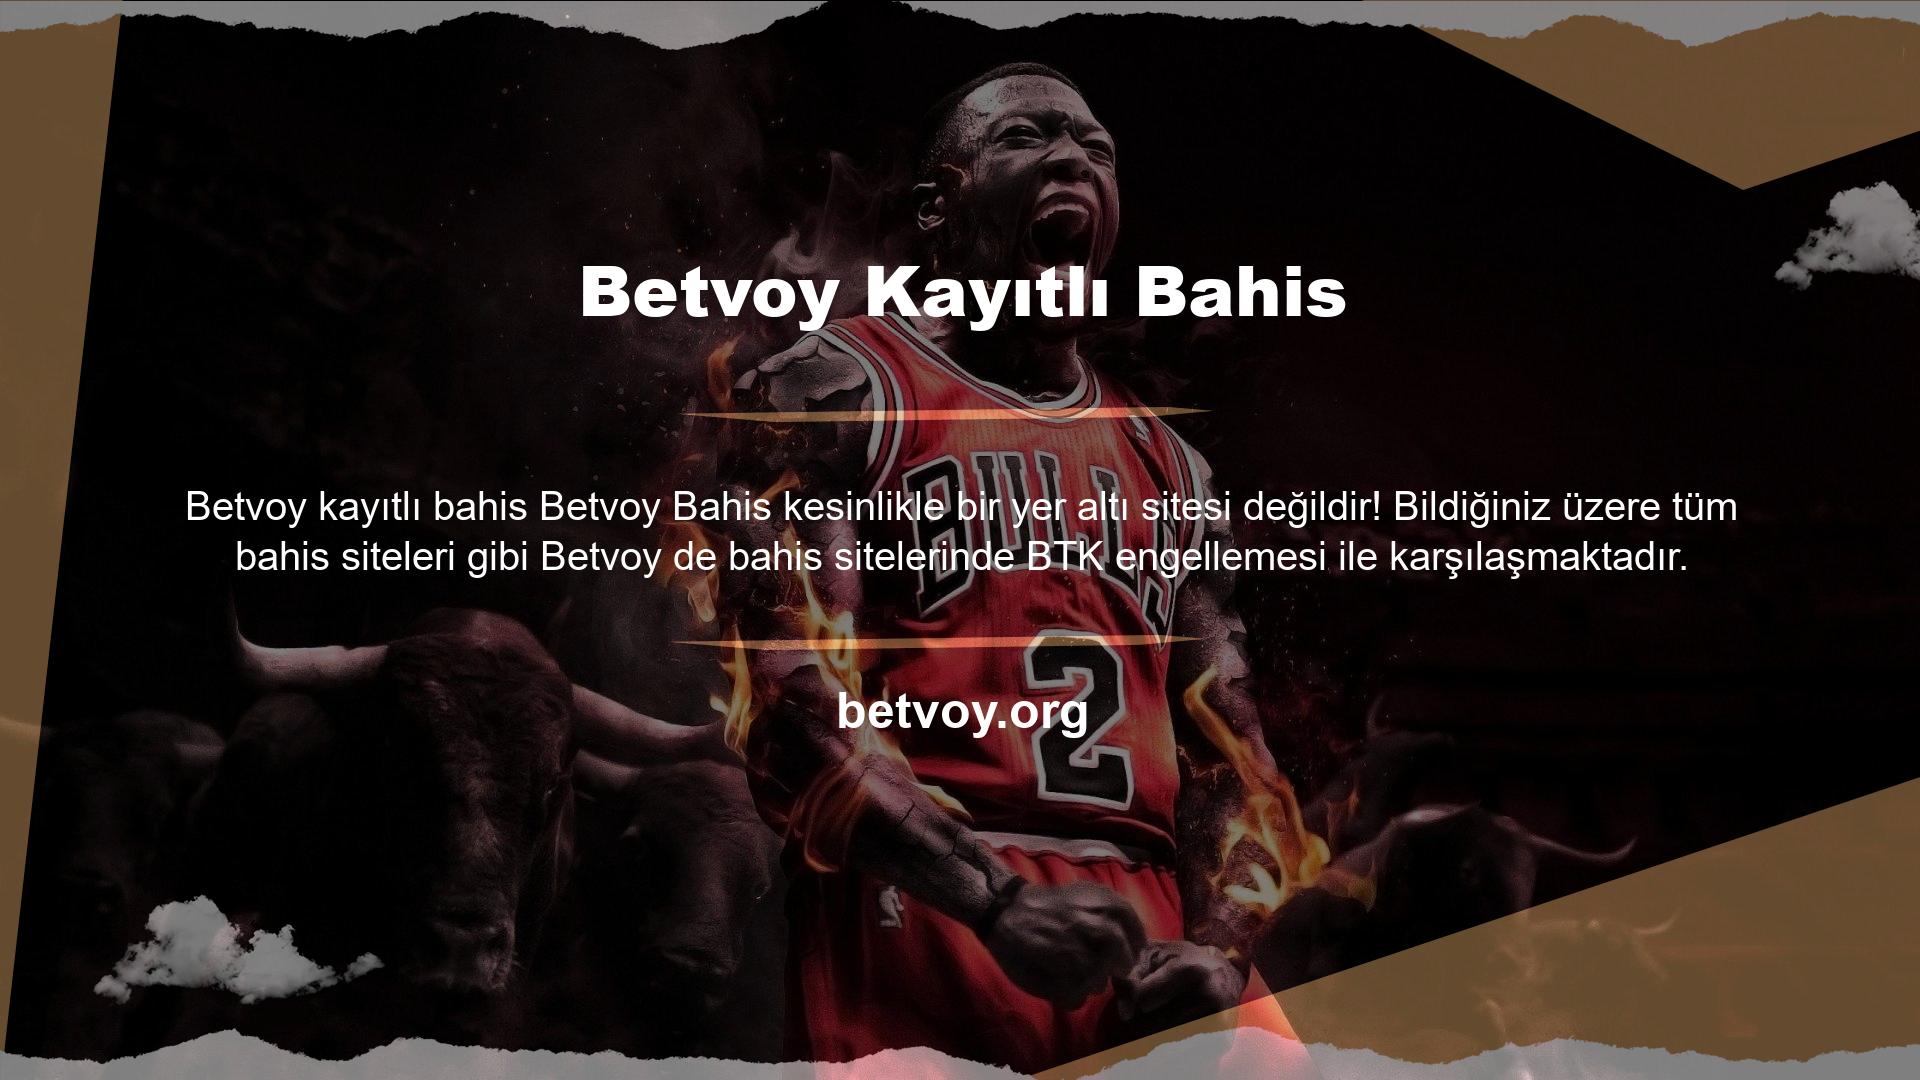 Betvoy bahis sitesi gerçek bir bahis sitesidir ve hatta Betvoy bahis sitesi Türkiye'ye hizmet veren bahis siteleri arasında köklü bir yere sahiptir